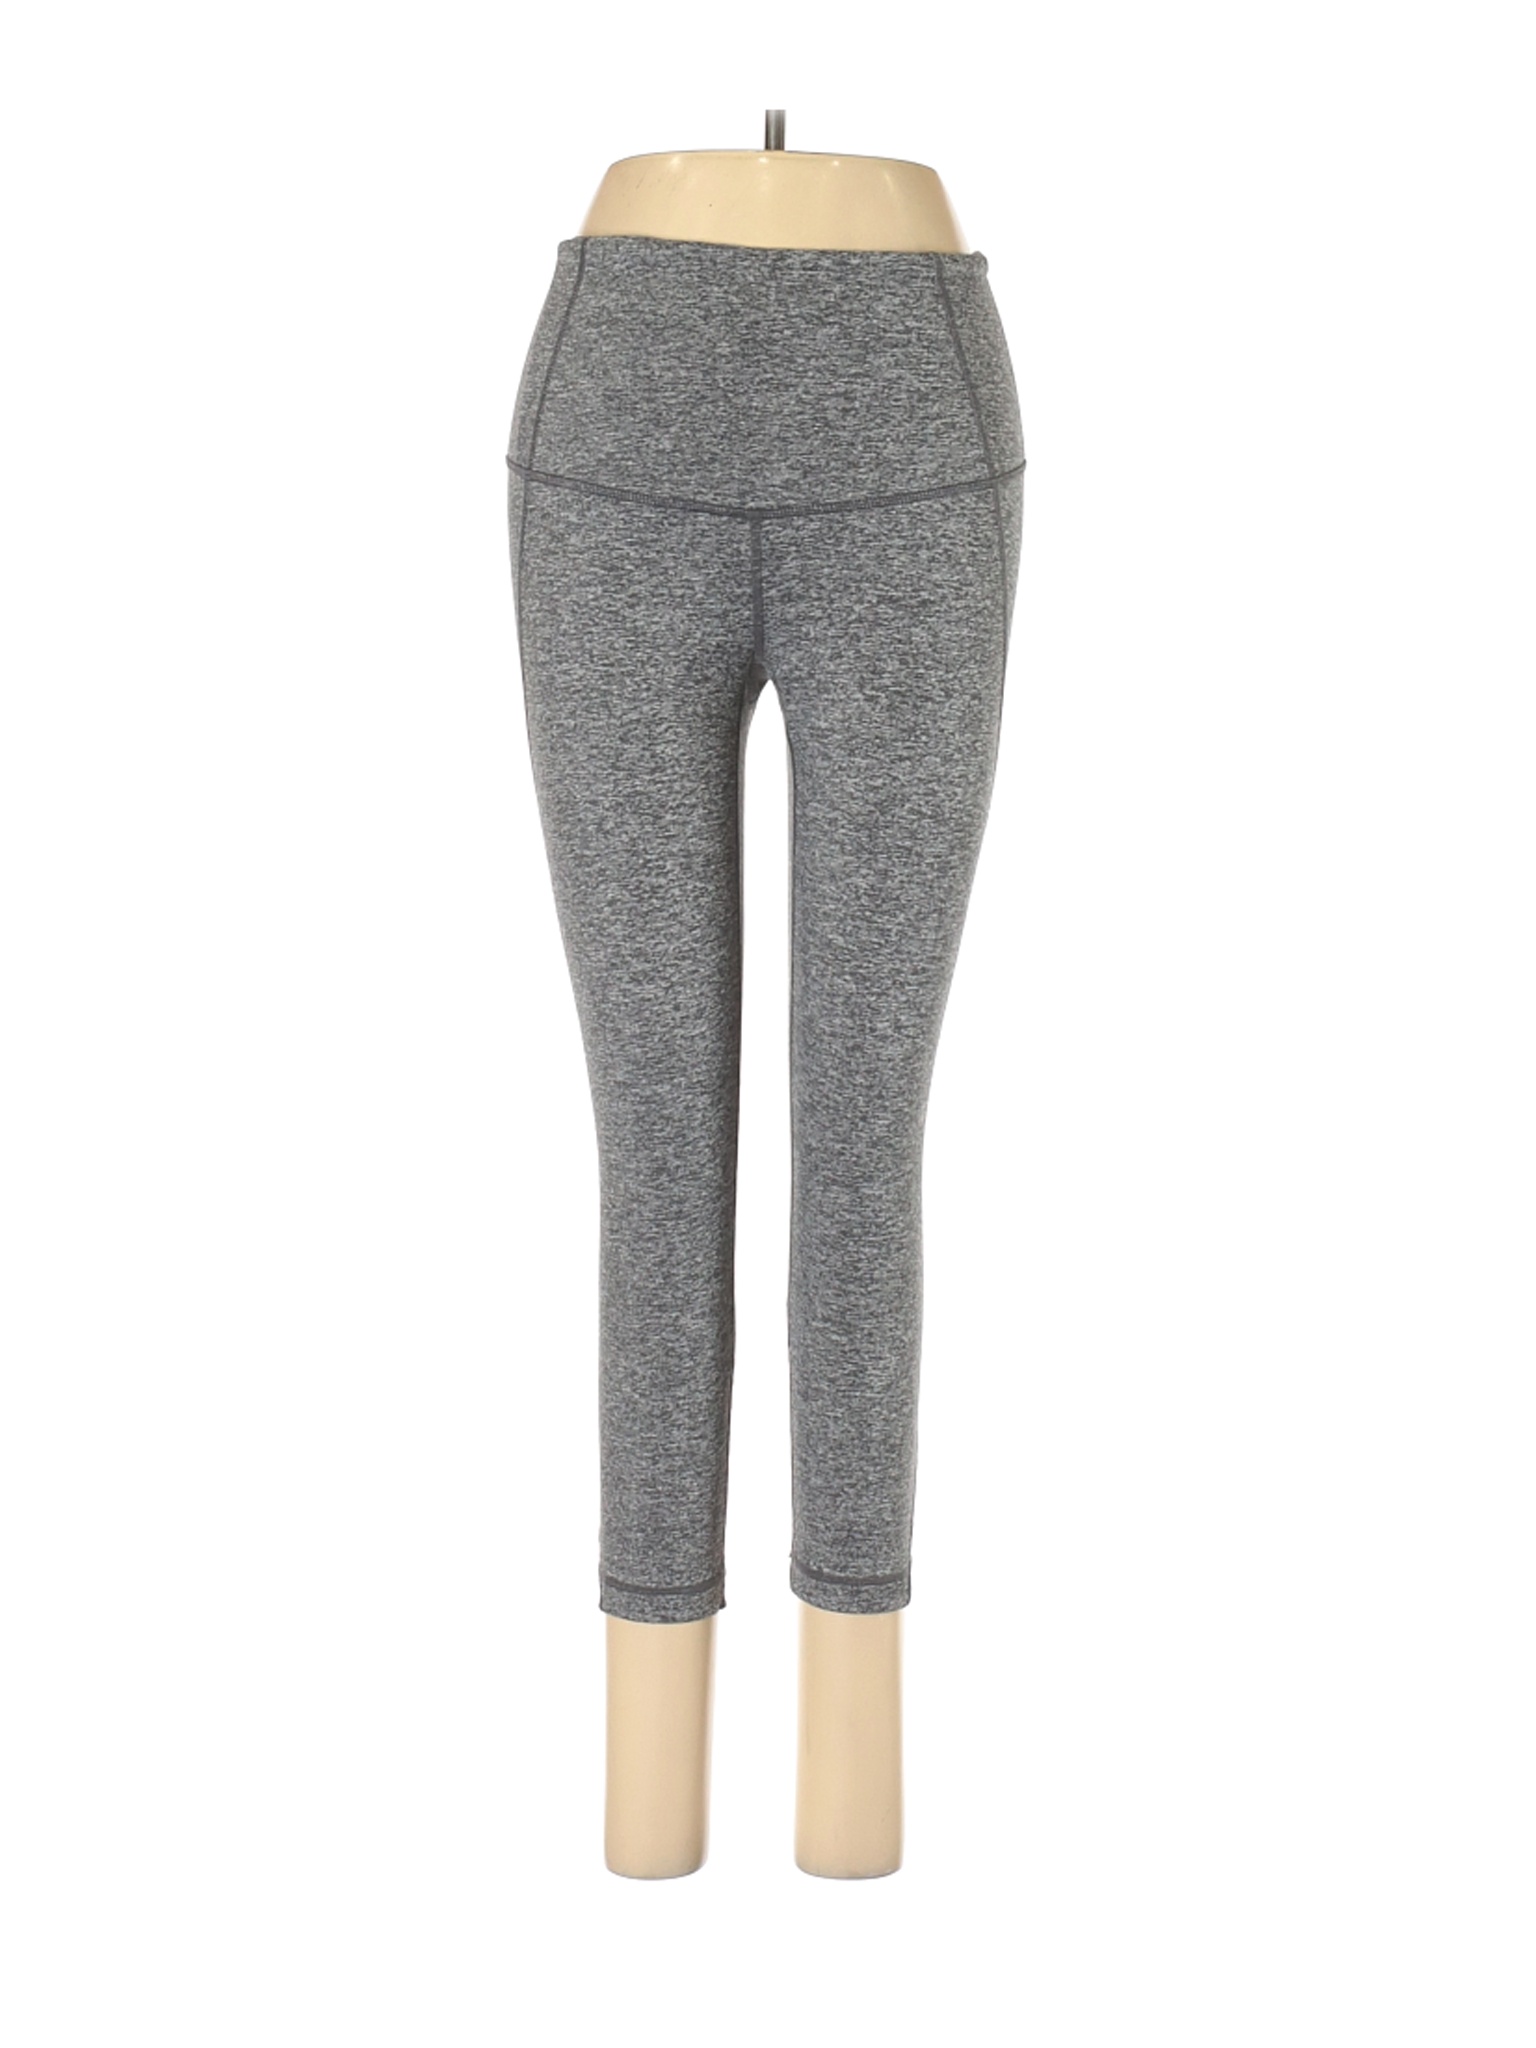 Zella Women Gray Active Pants S | eBay